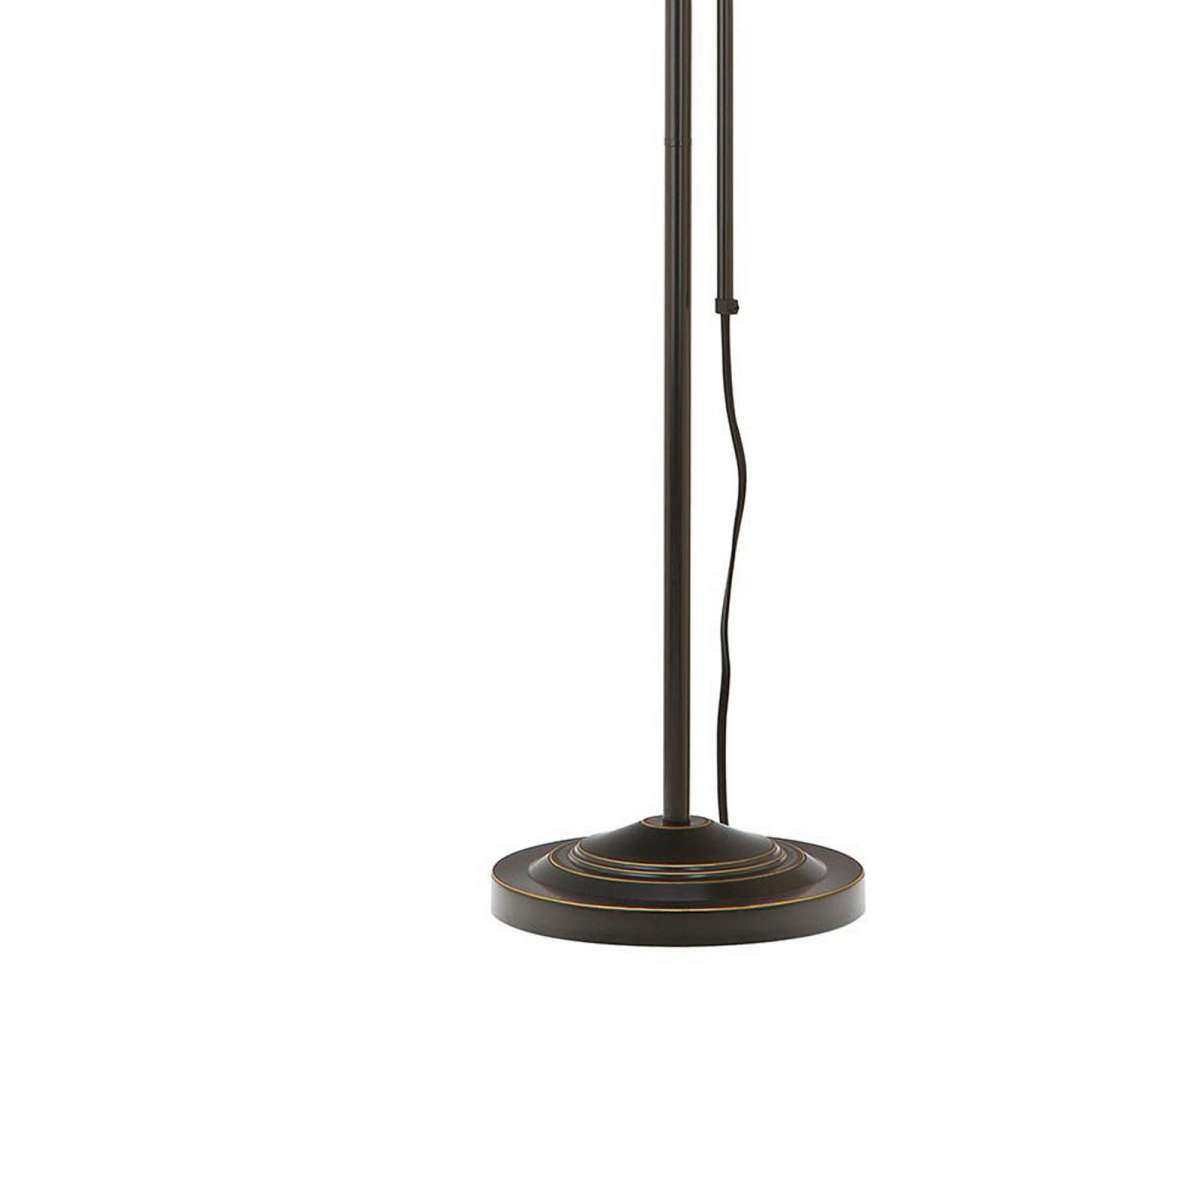 Metal Rectangular Floor Lamp With Adjustable Pole, Black By Benzara | Floor Lamps |  Modishstore  - 3